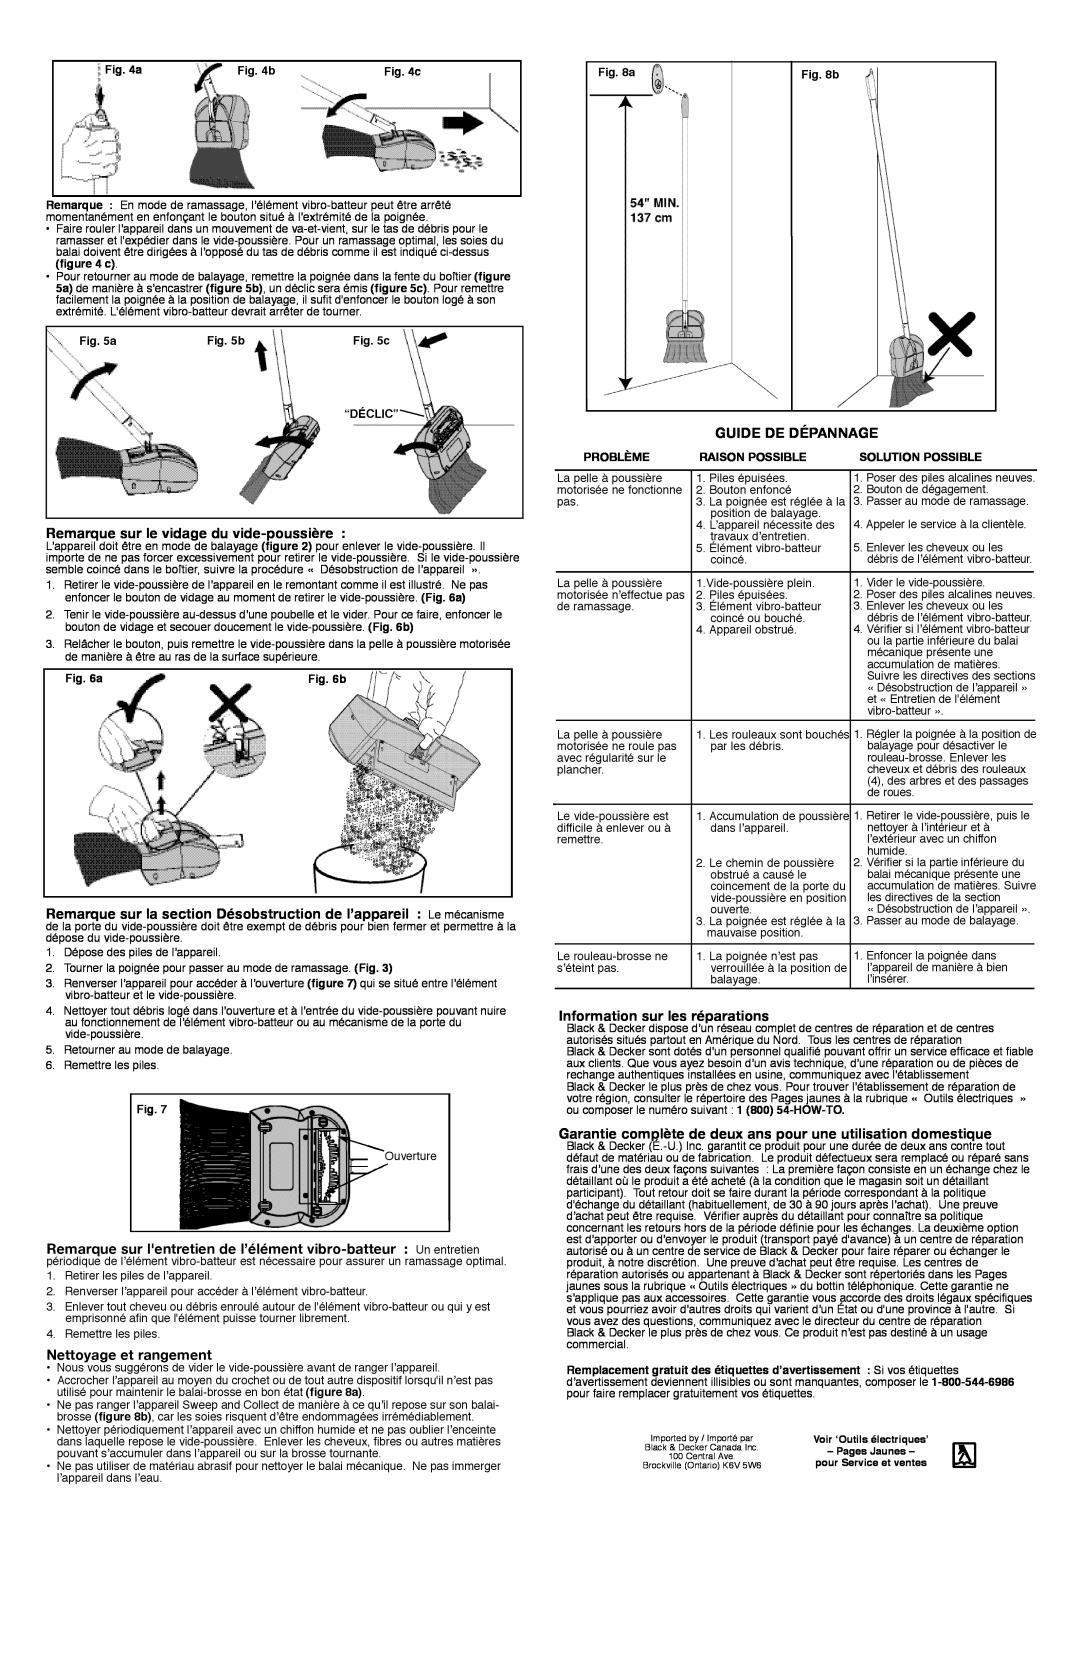 Black & Decker SNC100B Remarque sur le vidage du vide-poussière, Nettoyage et rangement, Guide De Dépannage, Problème 